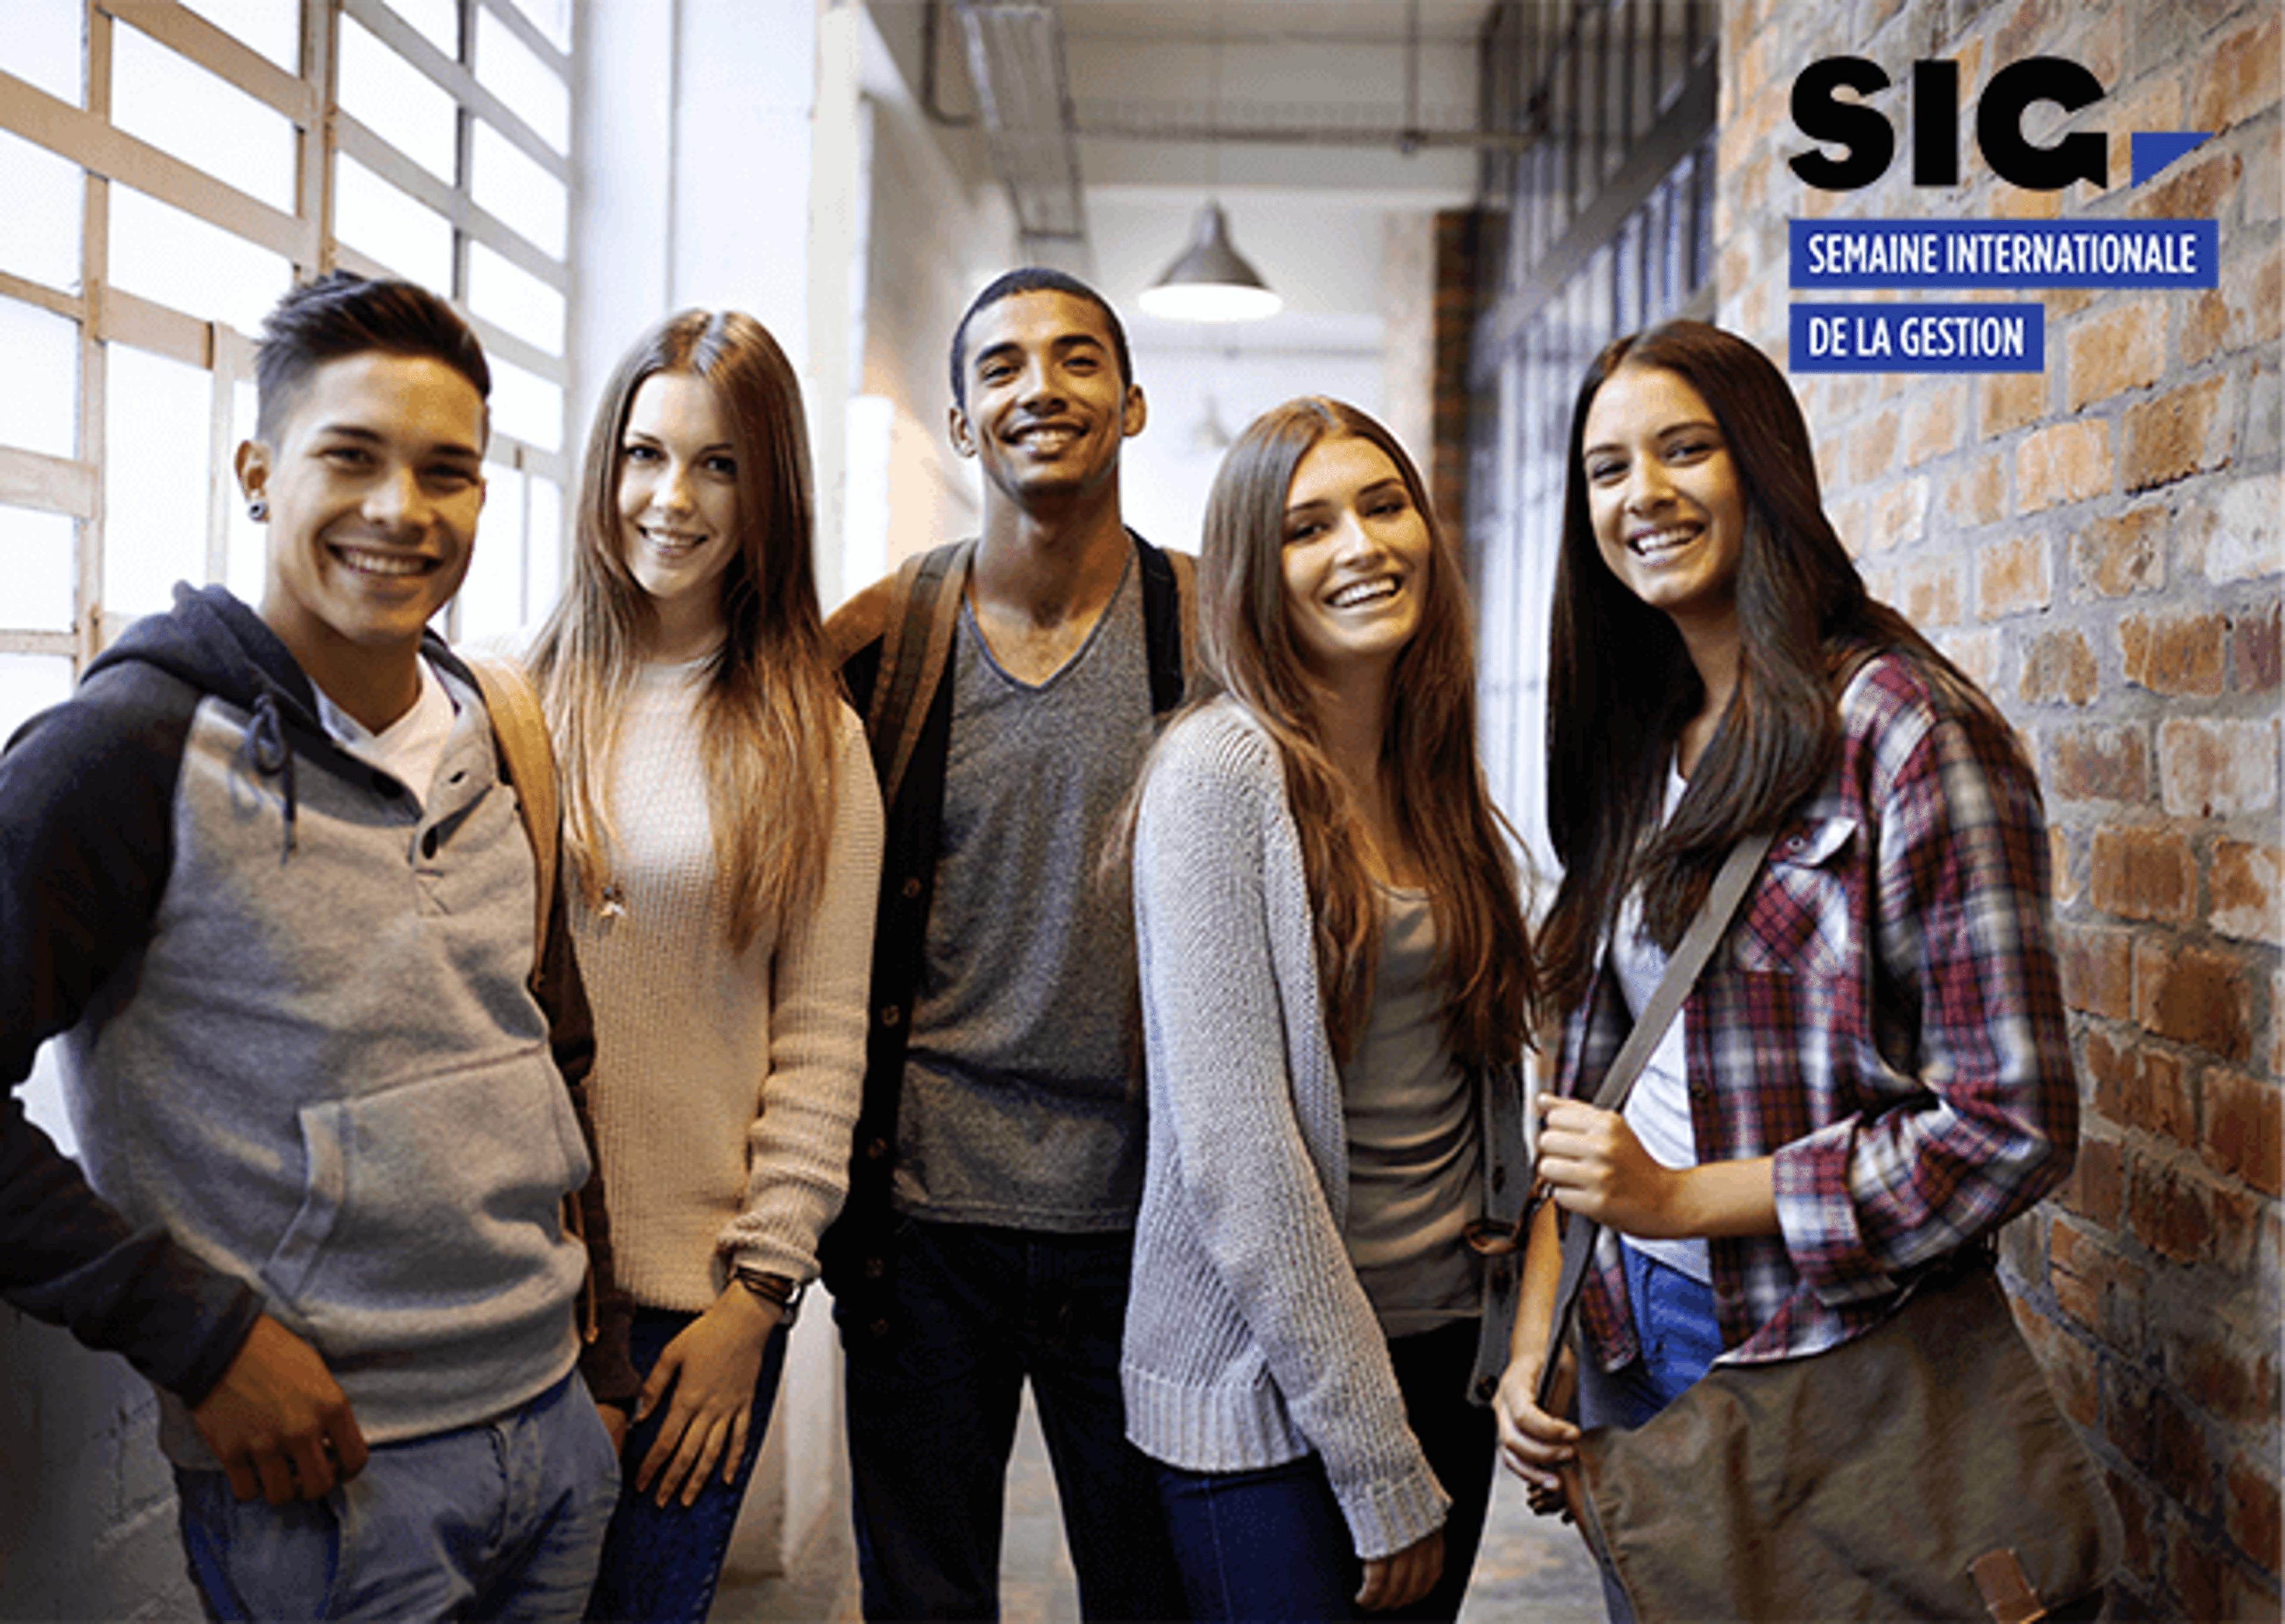  Cinq jeunes adultes souriants posent dans un couloir, avec le texte "SIC - SEMAINE INTERNATIONALE DE LA GESTION" affiché.